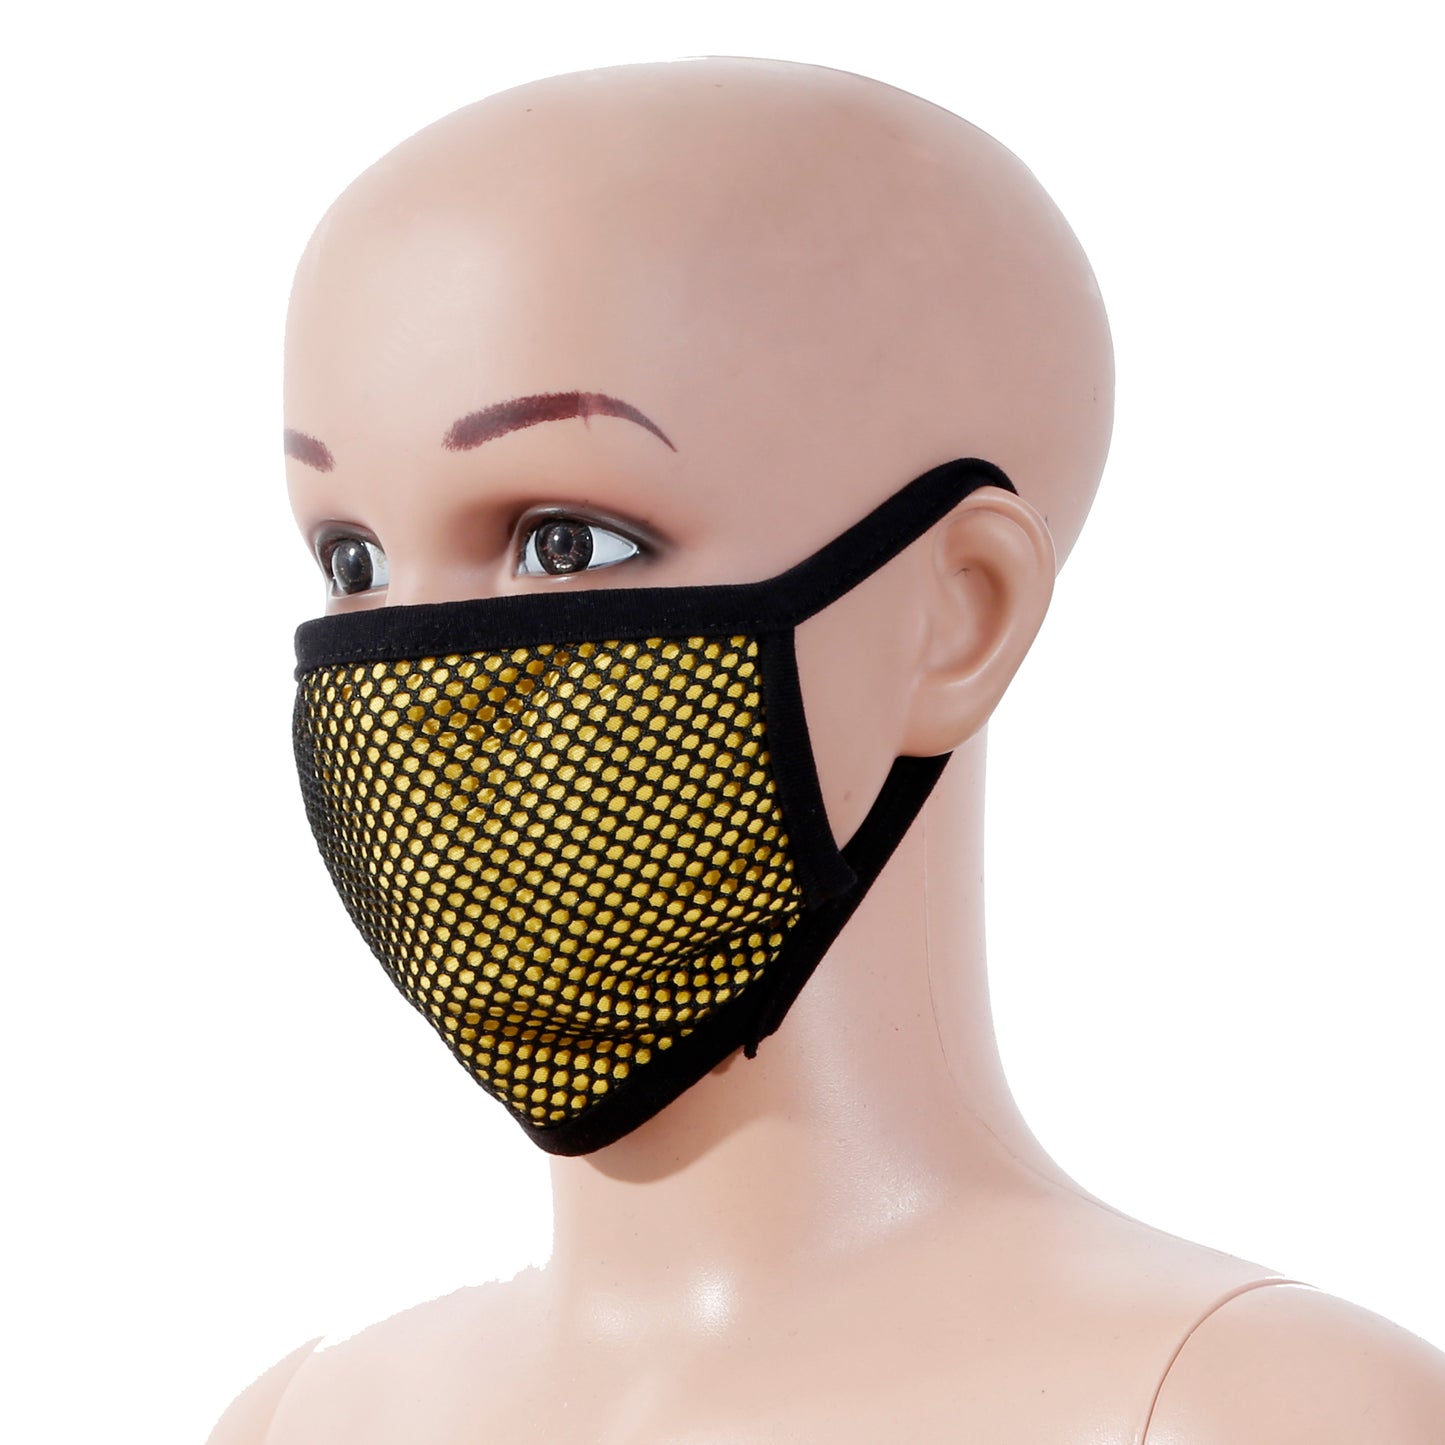 MashUp fashion mask,washable cotton face mask (Free Size-Adults)(Pack of 3) - mashup boys